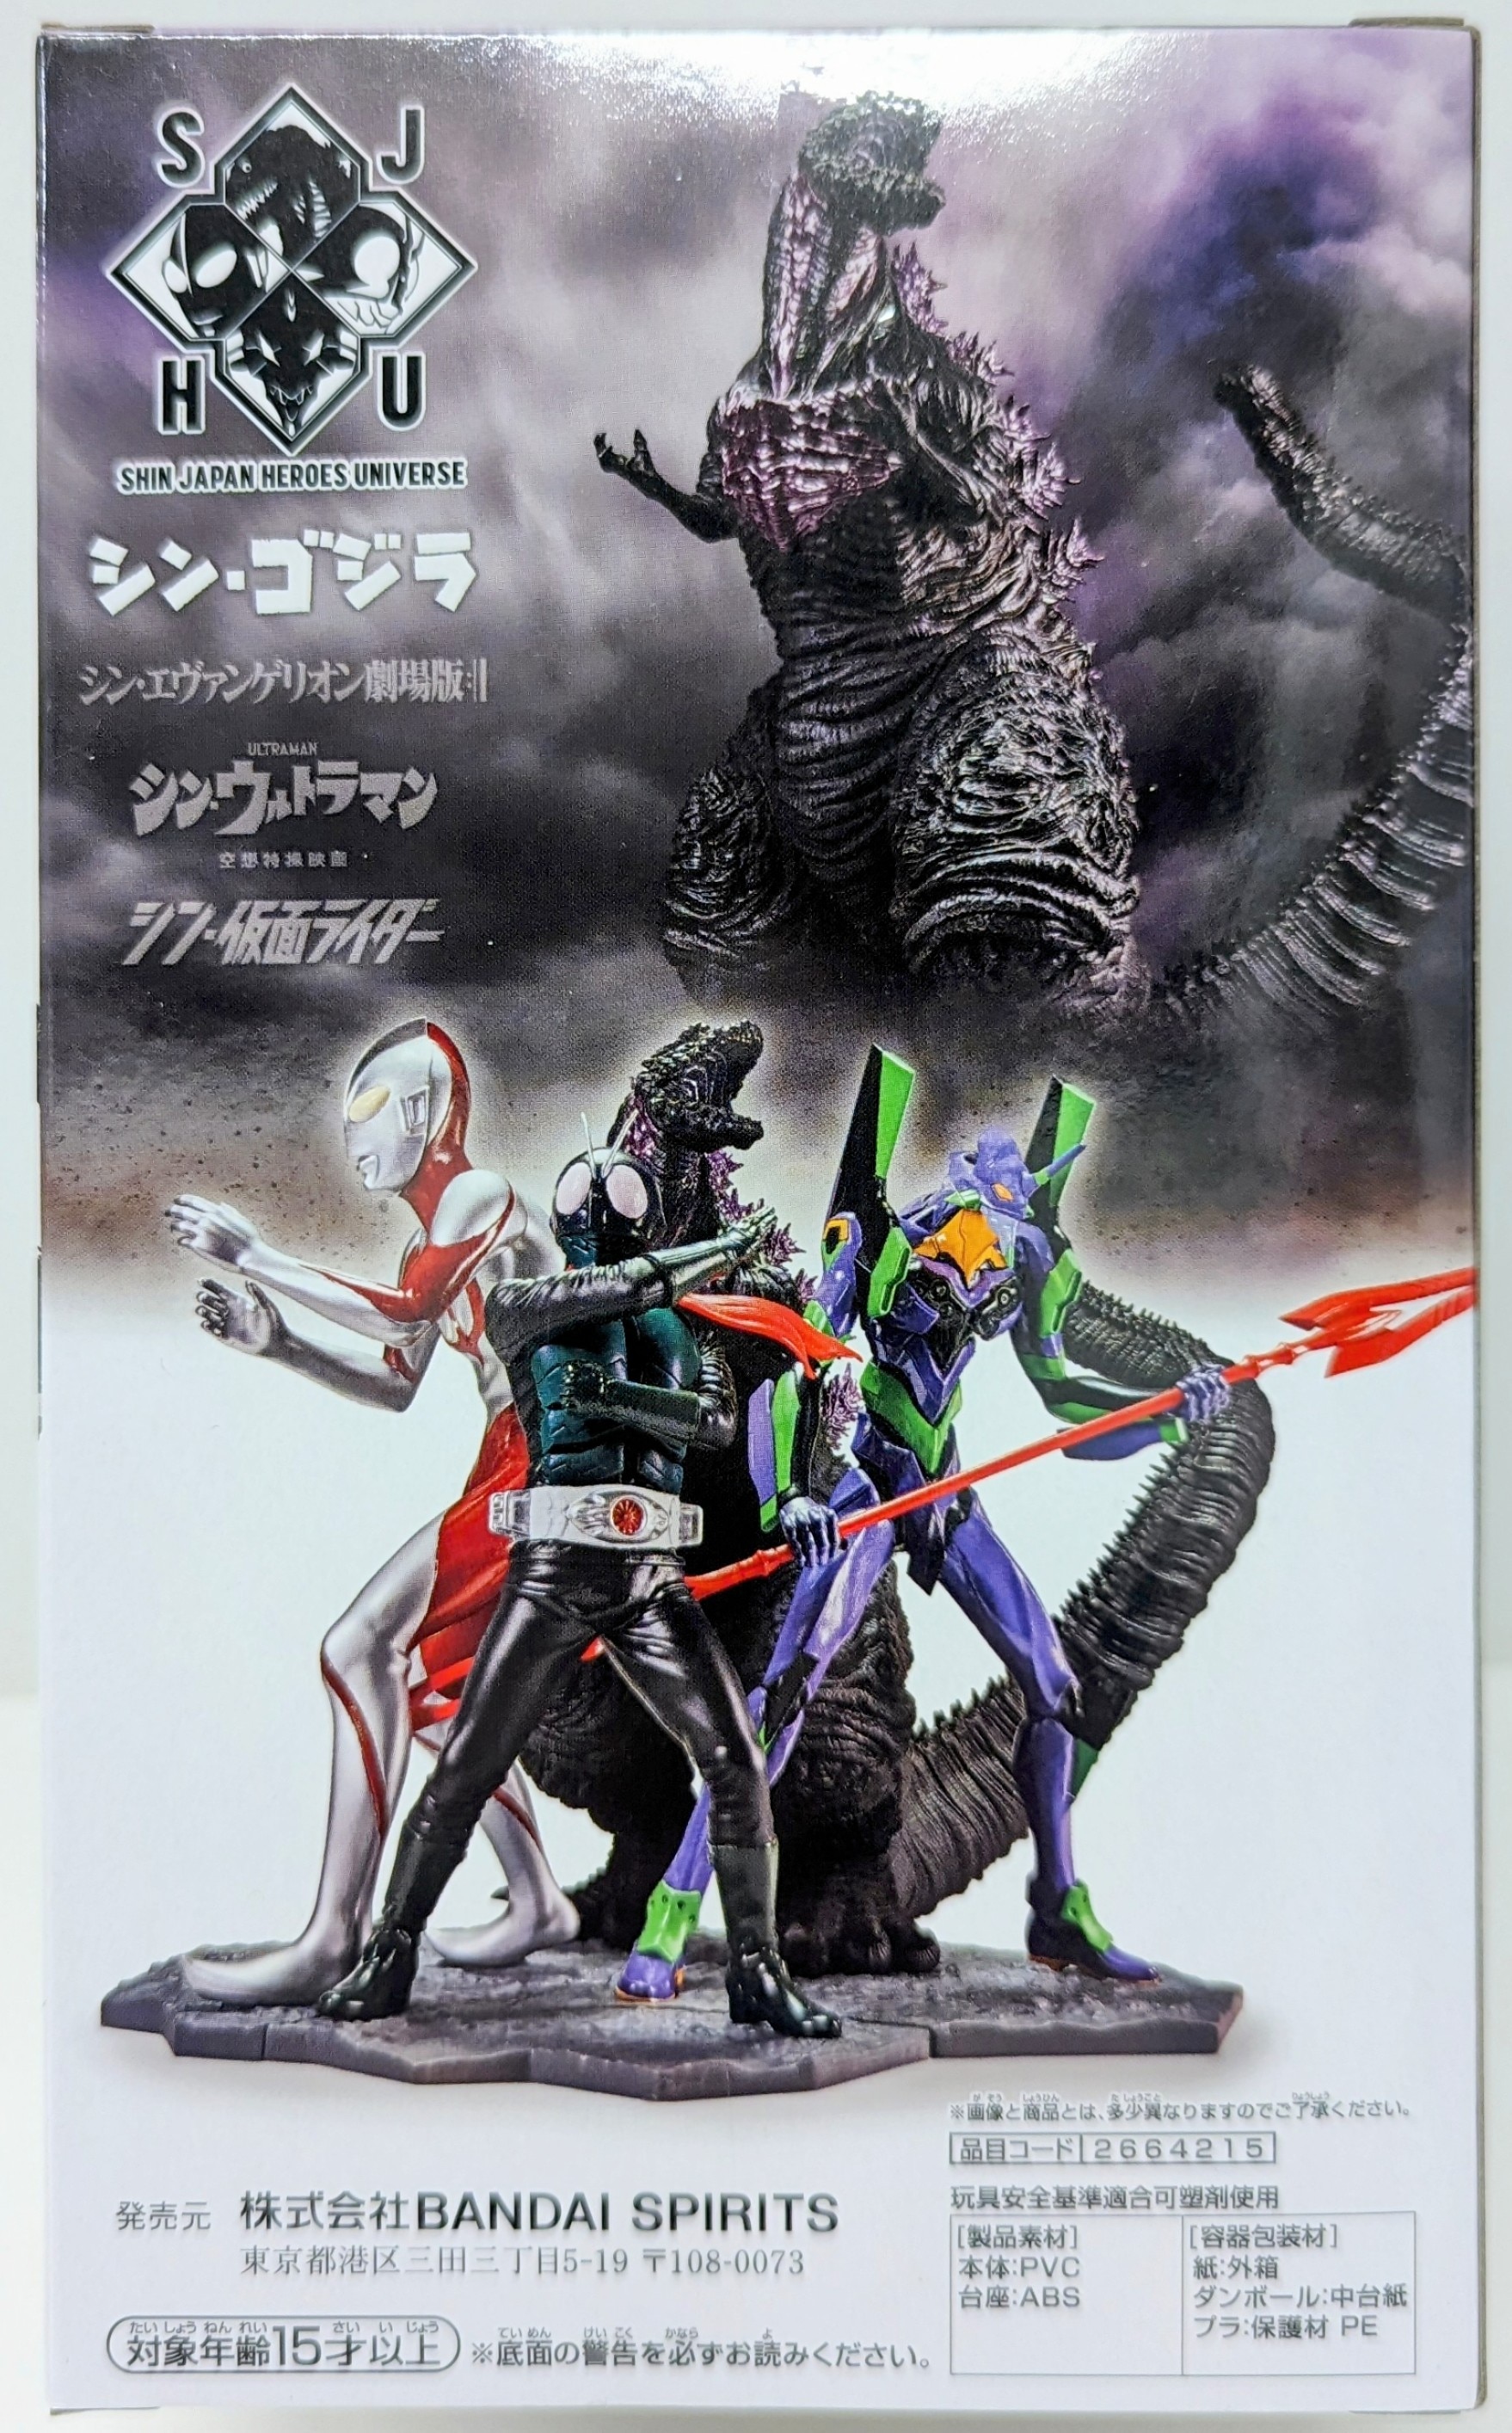 GODZILLA - Godzilla -Fig. Shin Japan Heroes Universe Art Vignette